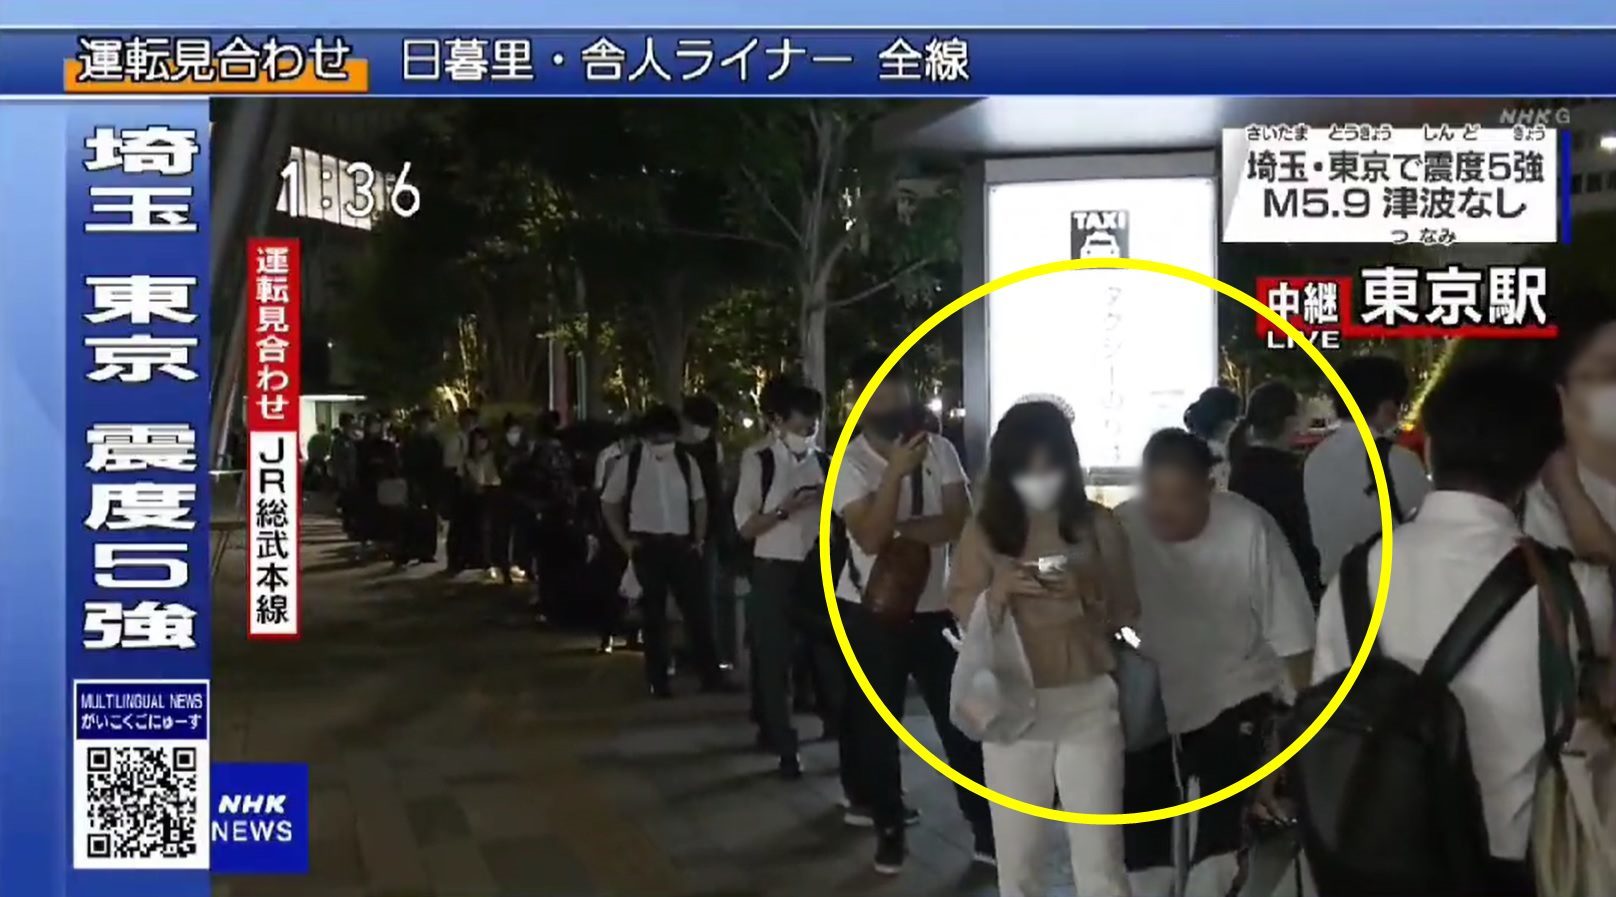 일본 뉴스에 노마스크인 남성이 지나가는 여성에게 헌팅하는 모습이 포착됐다. 해당 방송 캡처